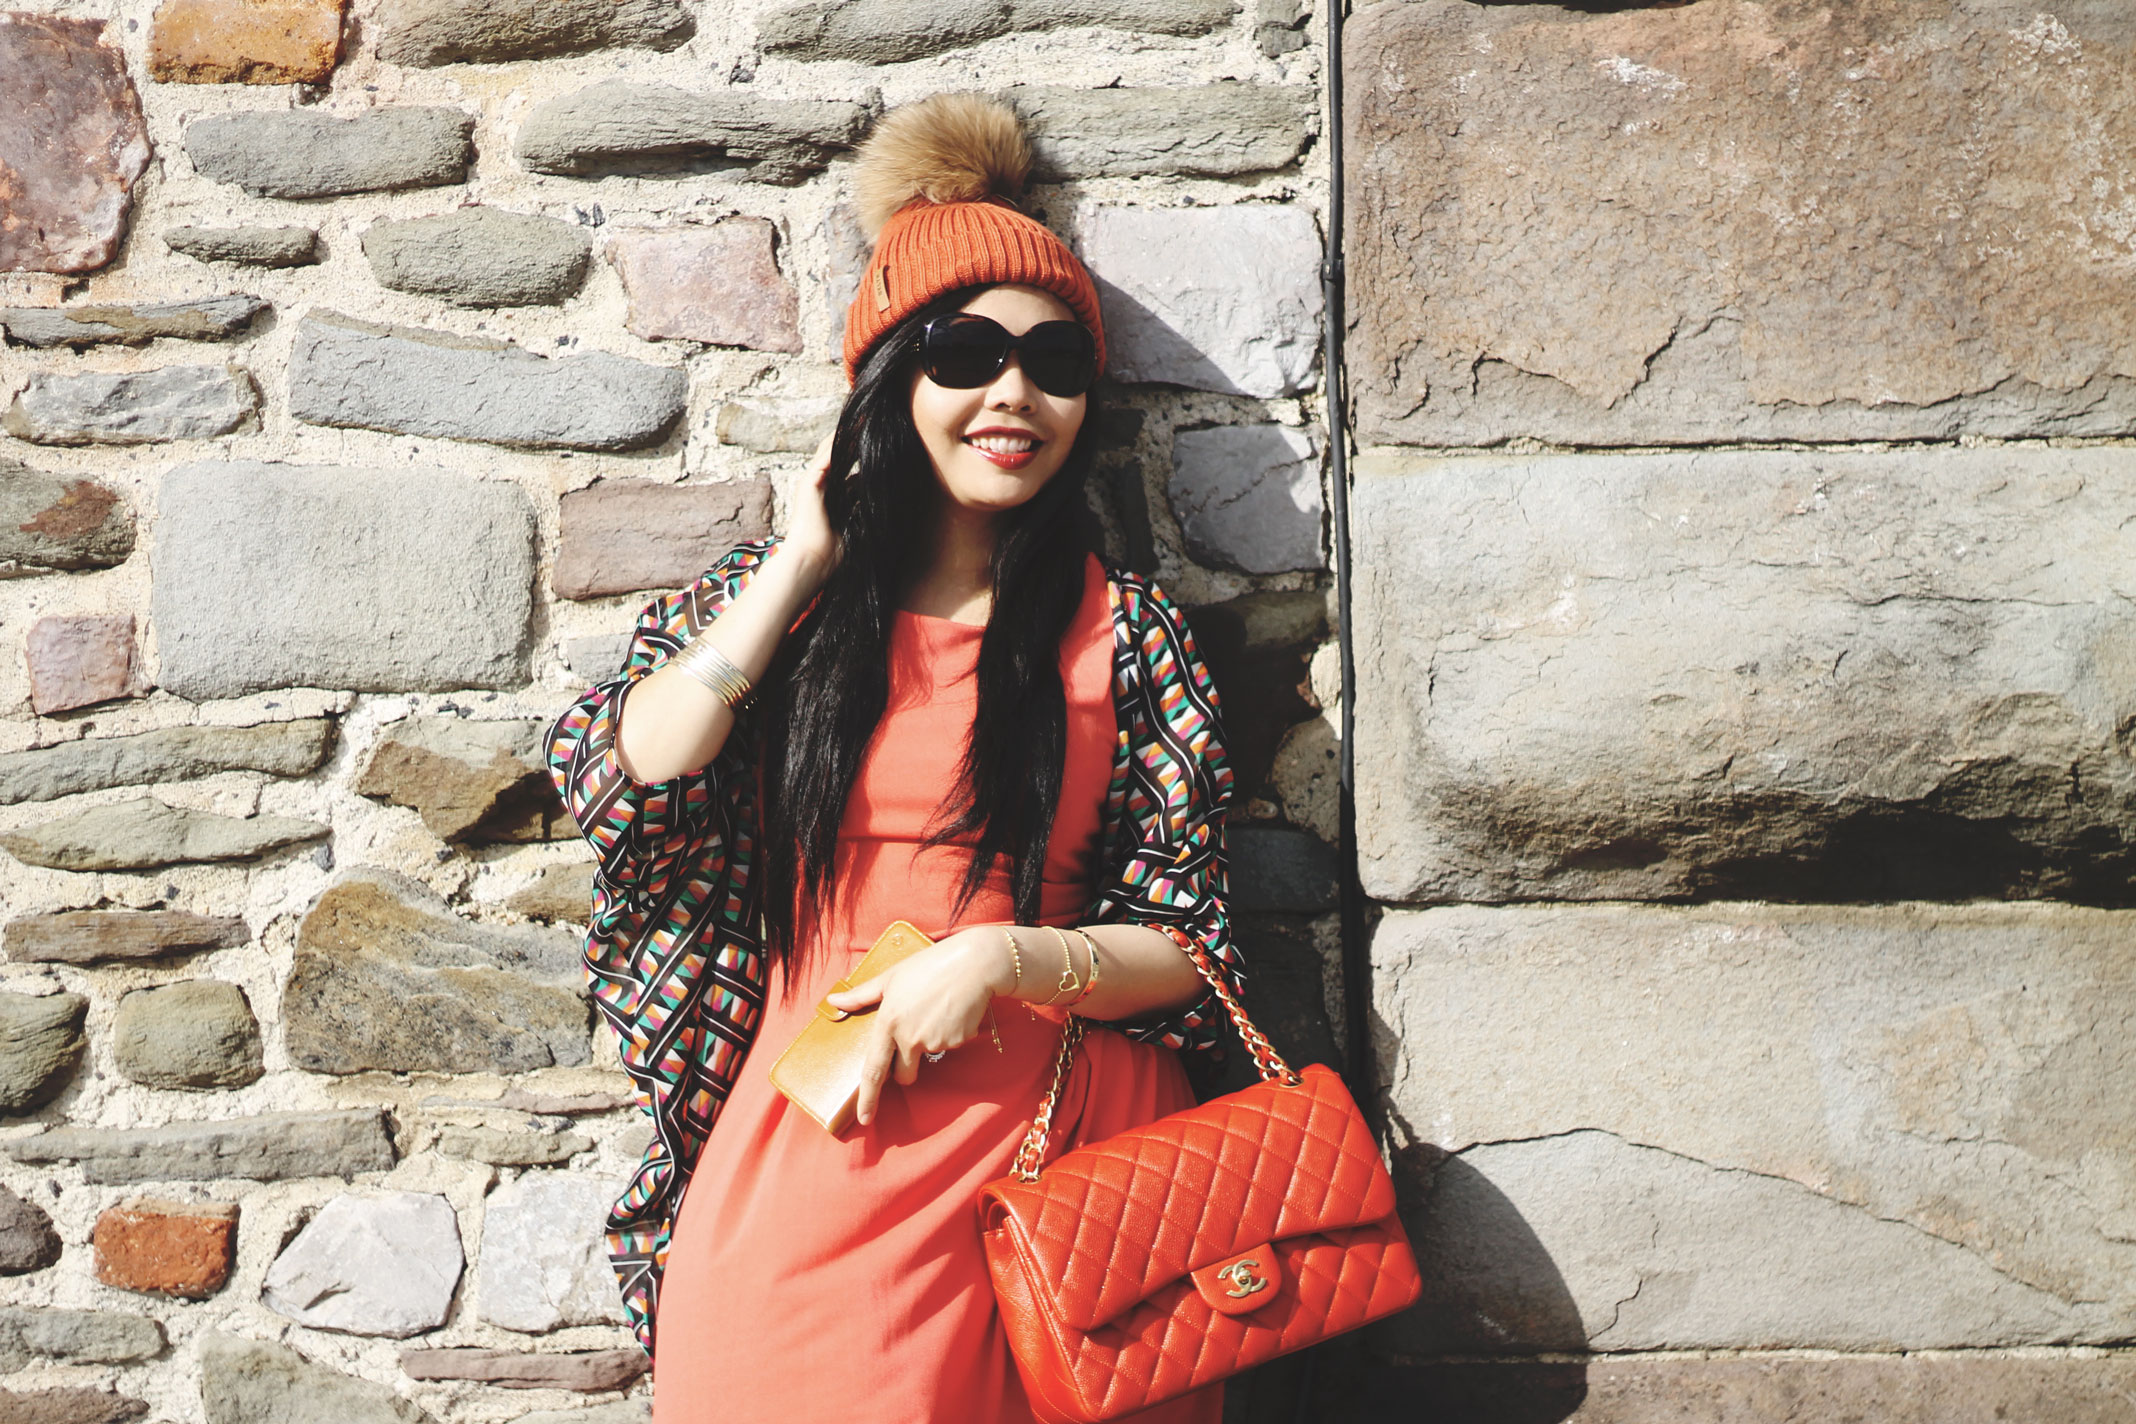 BKLYN - Luxury Italian Merino Wool Fur Bobble Hats - Pom Pom Brooklyn Beanie - STYLEAT30 Fashion Blog 07